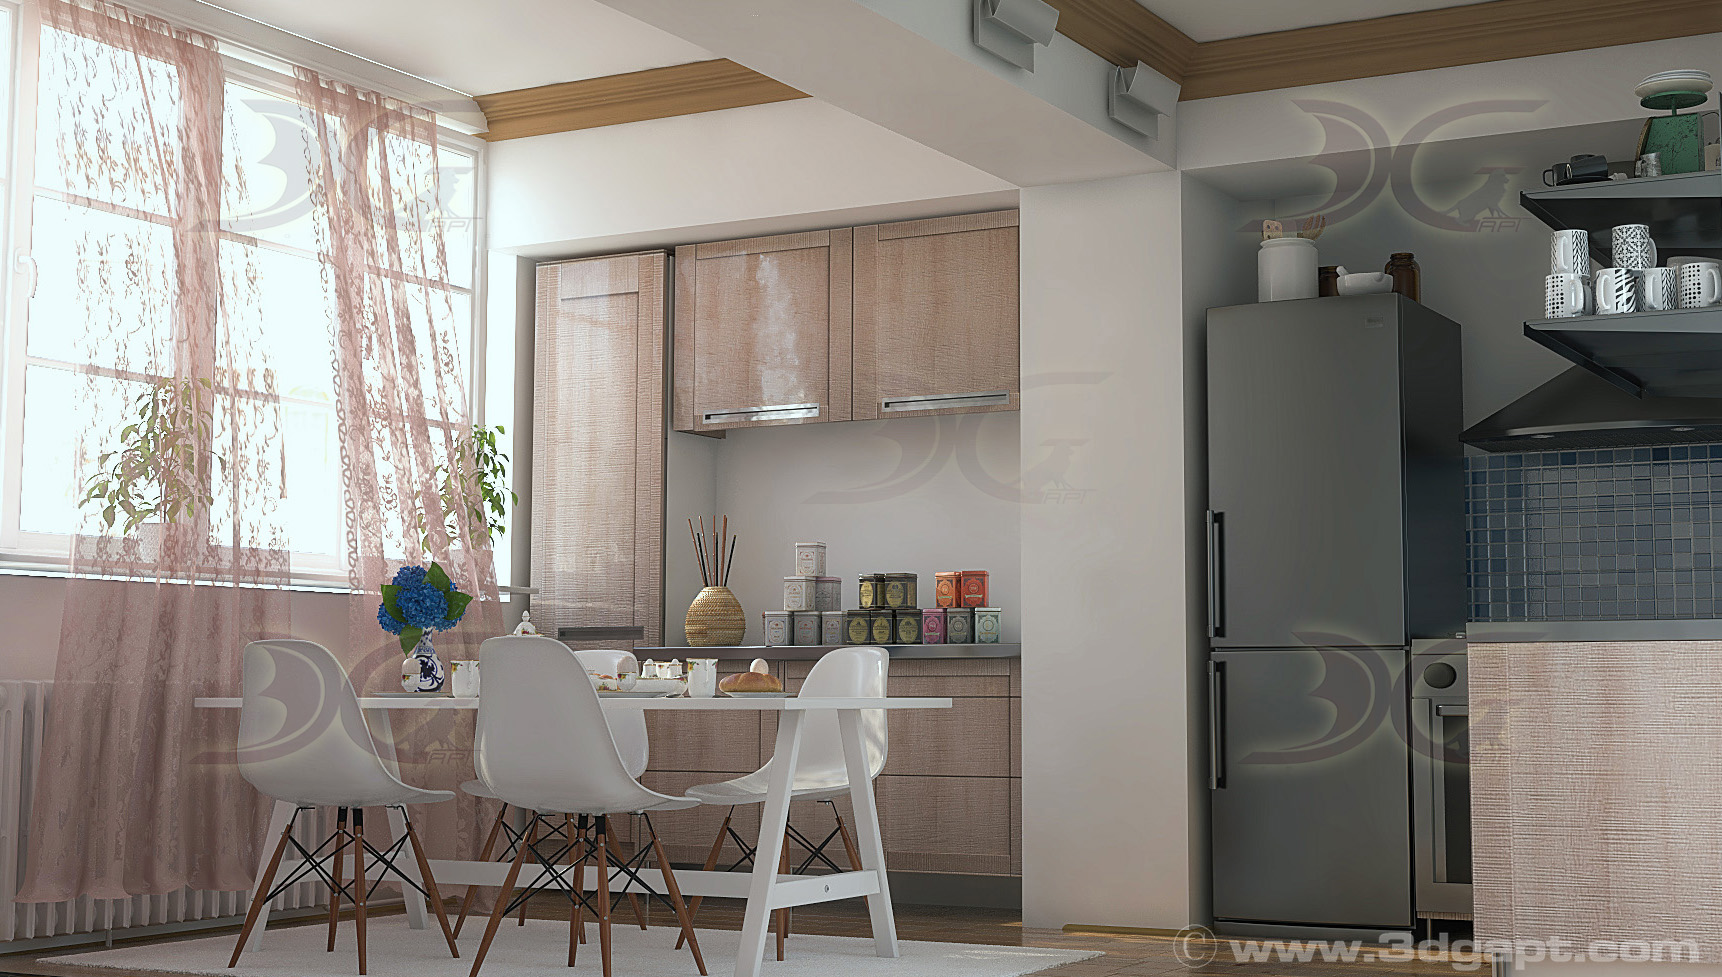 architecture interior kitchen-2versions 009